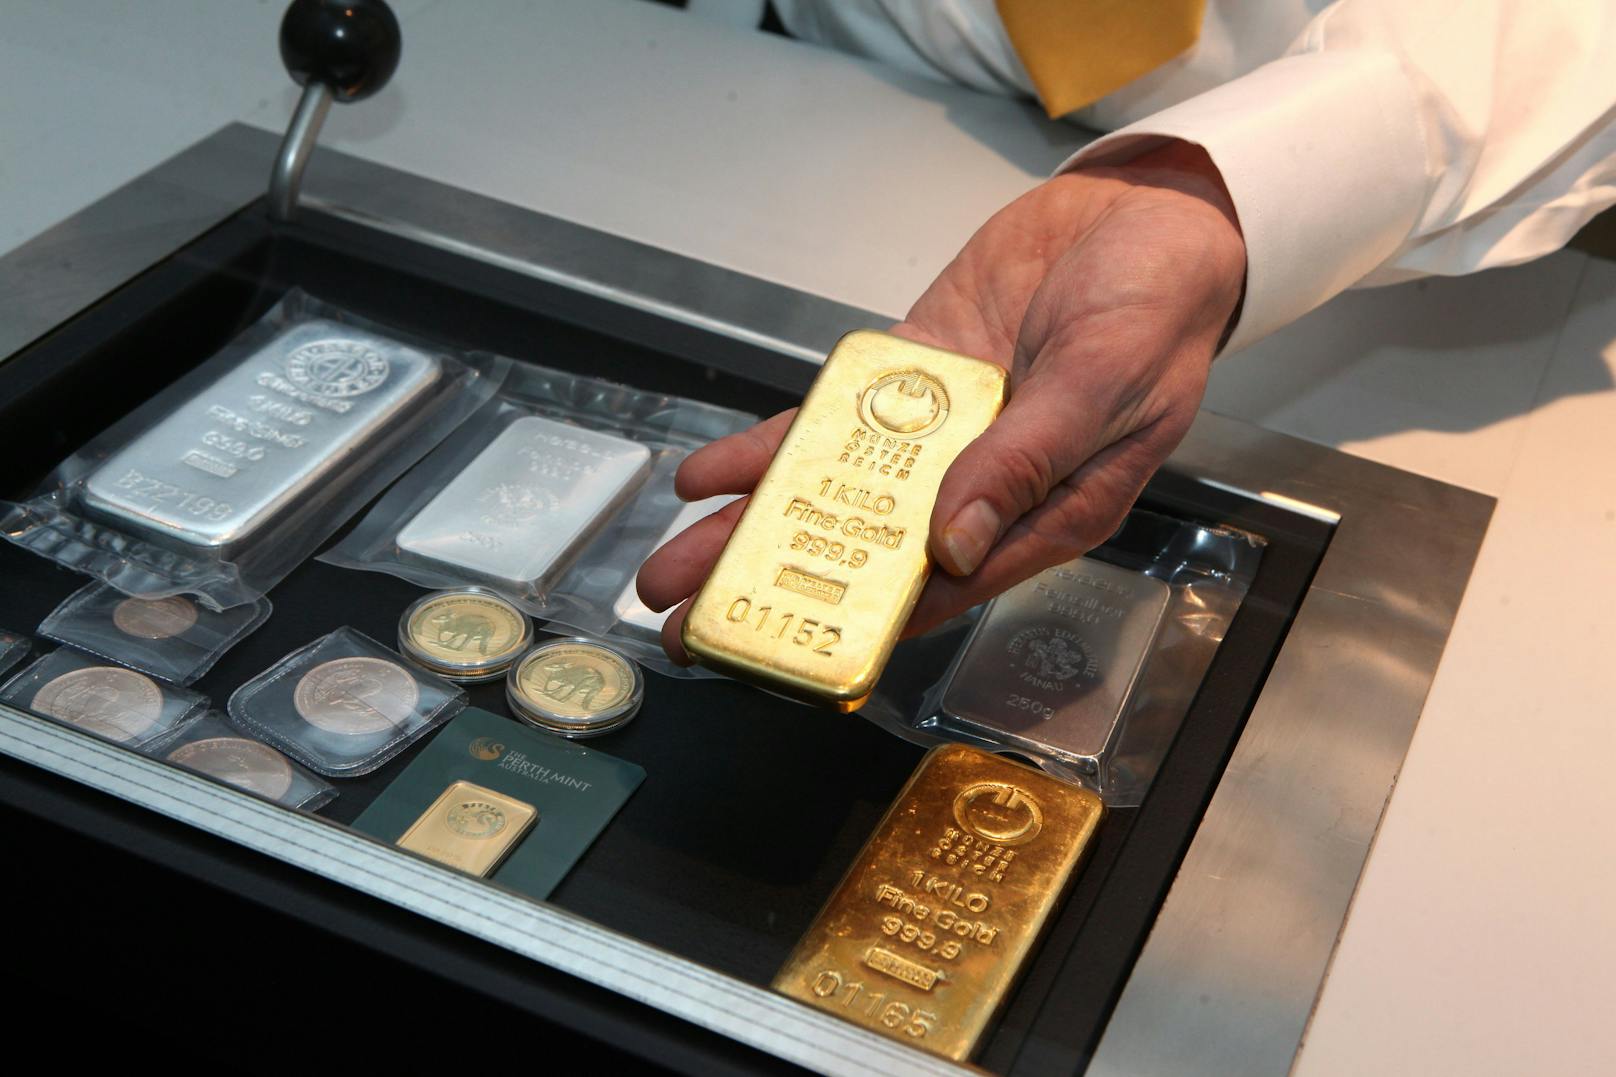 Gold sei in Österreich als Anlage beliebter als Aktien und Immobilien, steht in einer Studie der HSG.